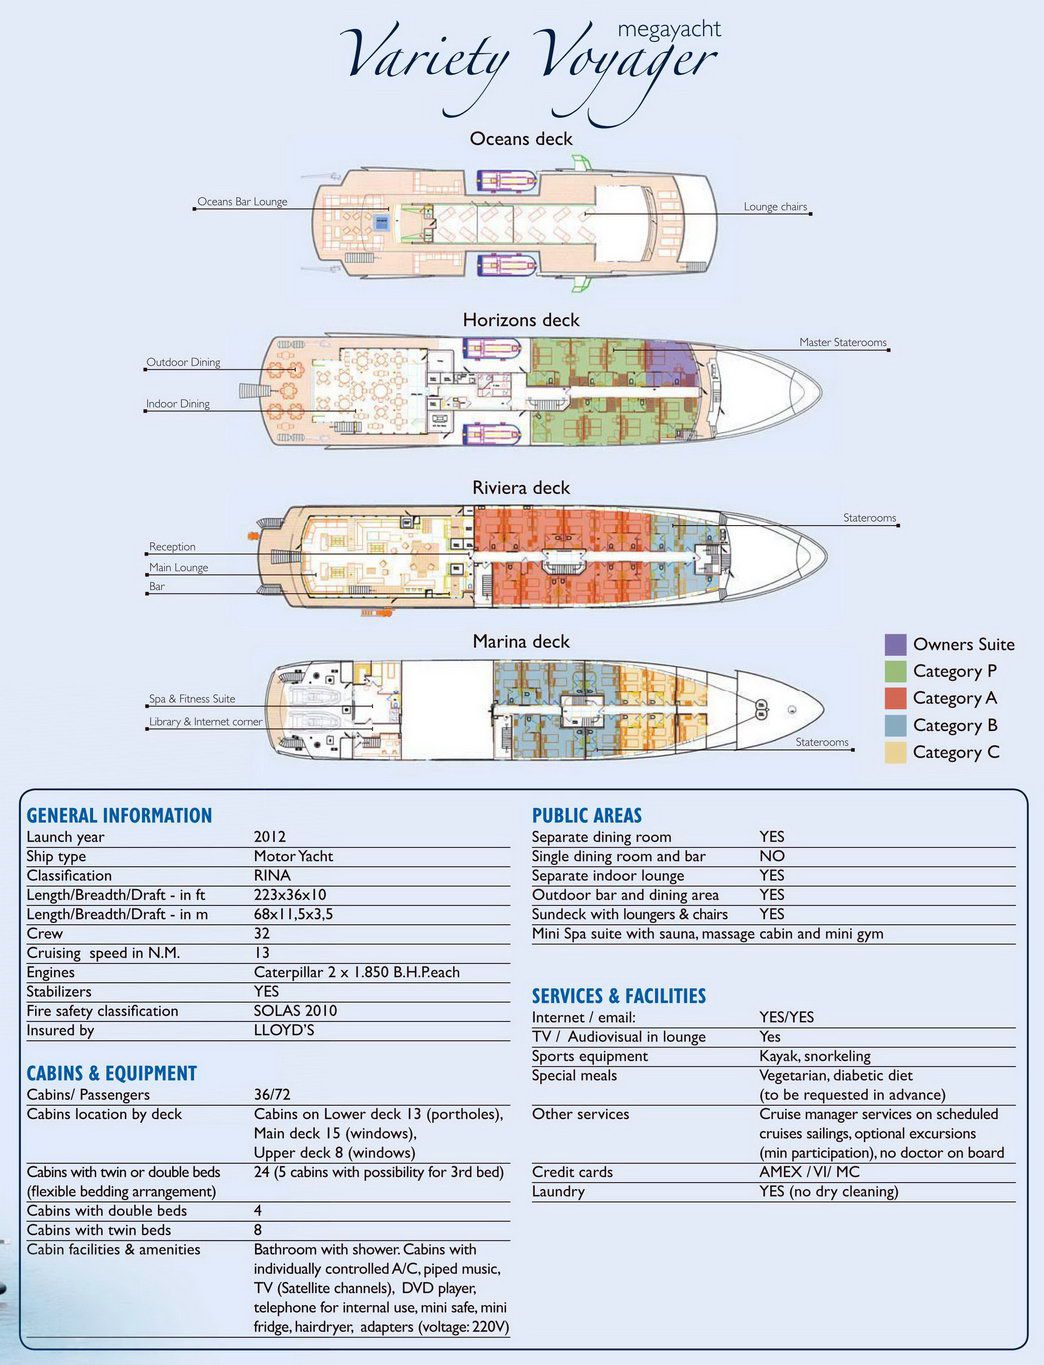 План палуб Variety Voyager